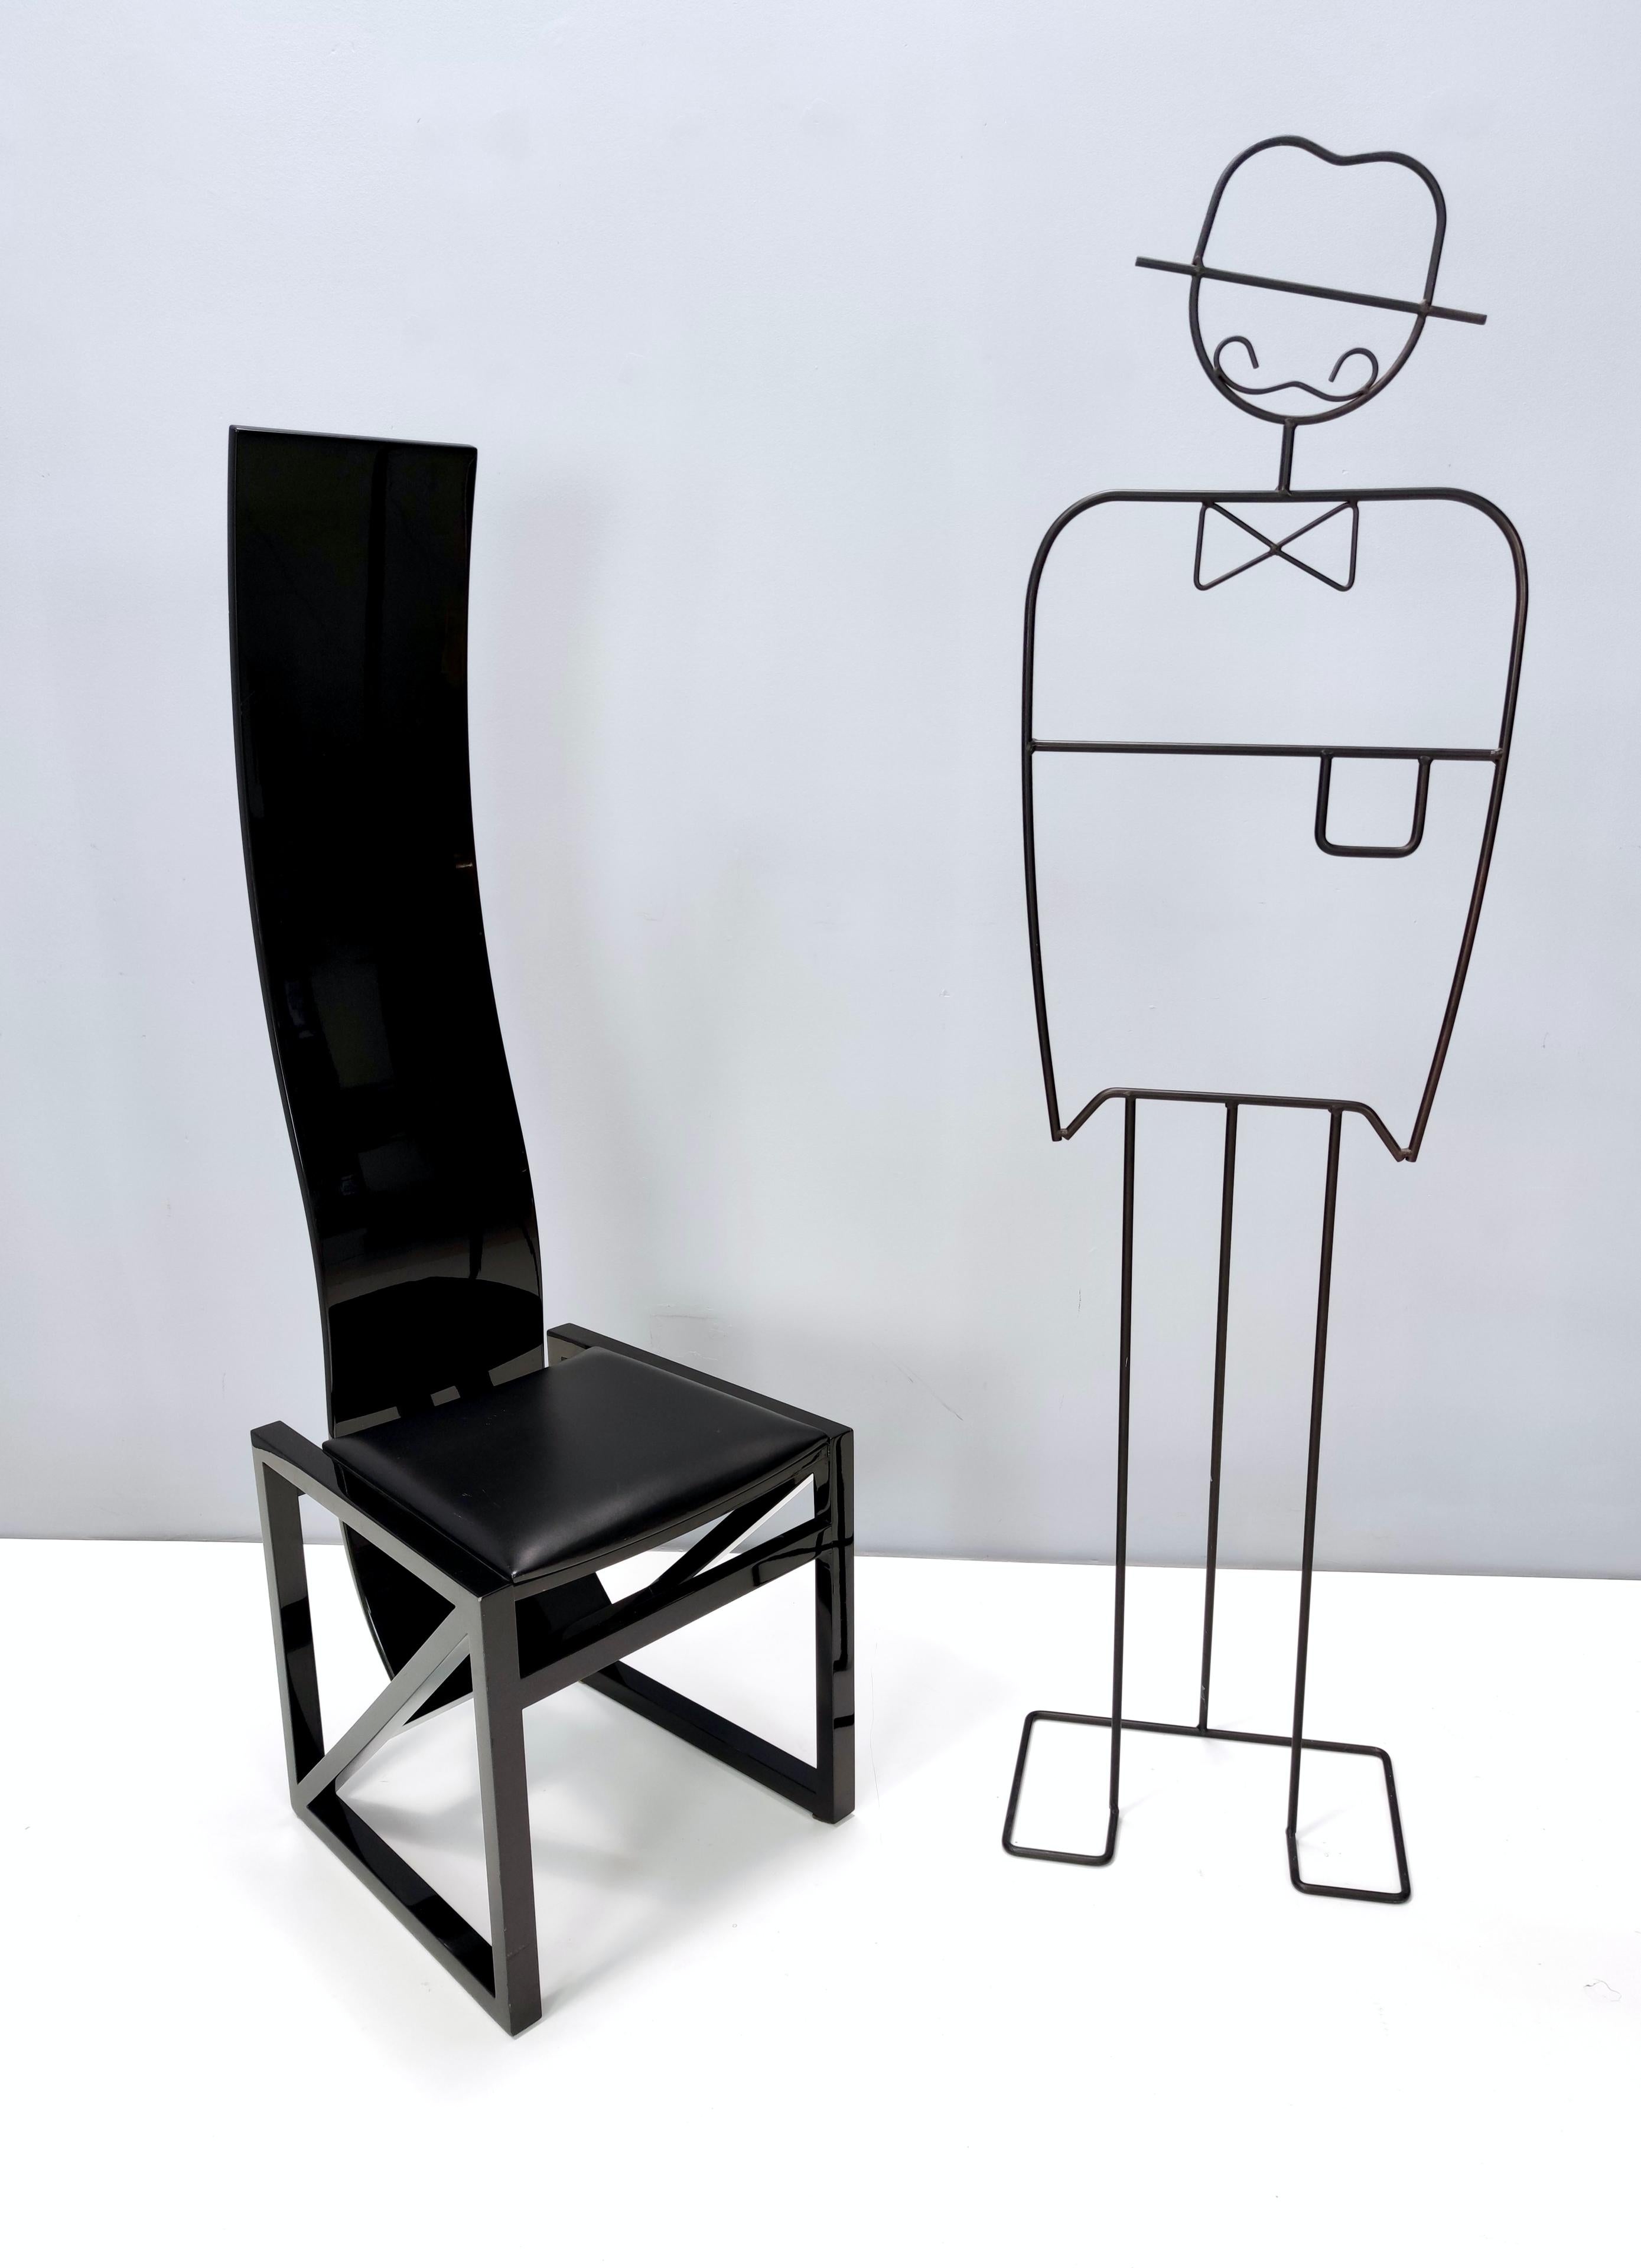 Dieser Stuhl aus der EDO-Serie wurde in den 1980er Jahren von dem japanischen Architekten Kisho Kurokawa entworfen und von der PPM Corporation, Tokio, hergestellt. 
Das Designkonzept der EDO-Serie basiert auf der Symbiose zwischen unserem modernen